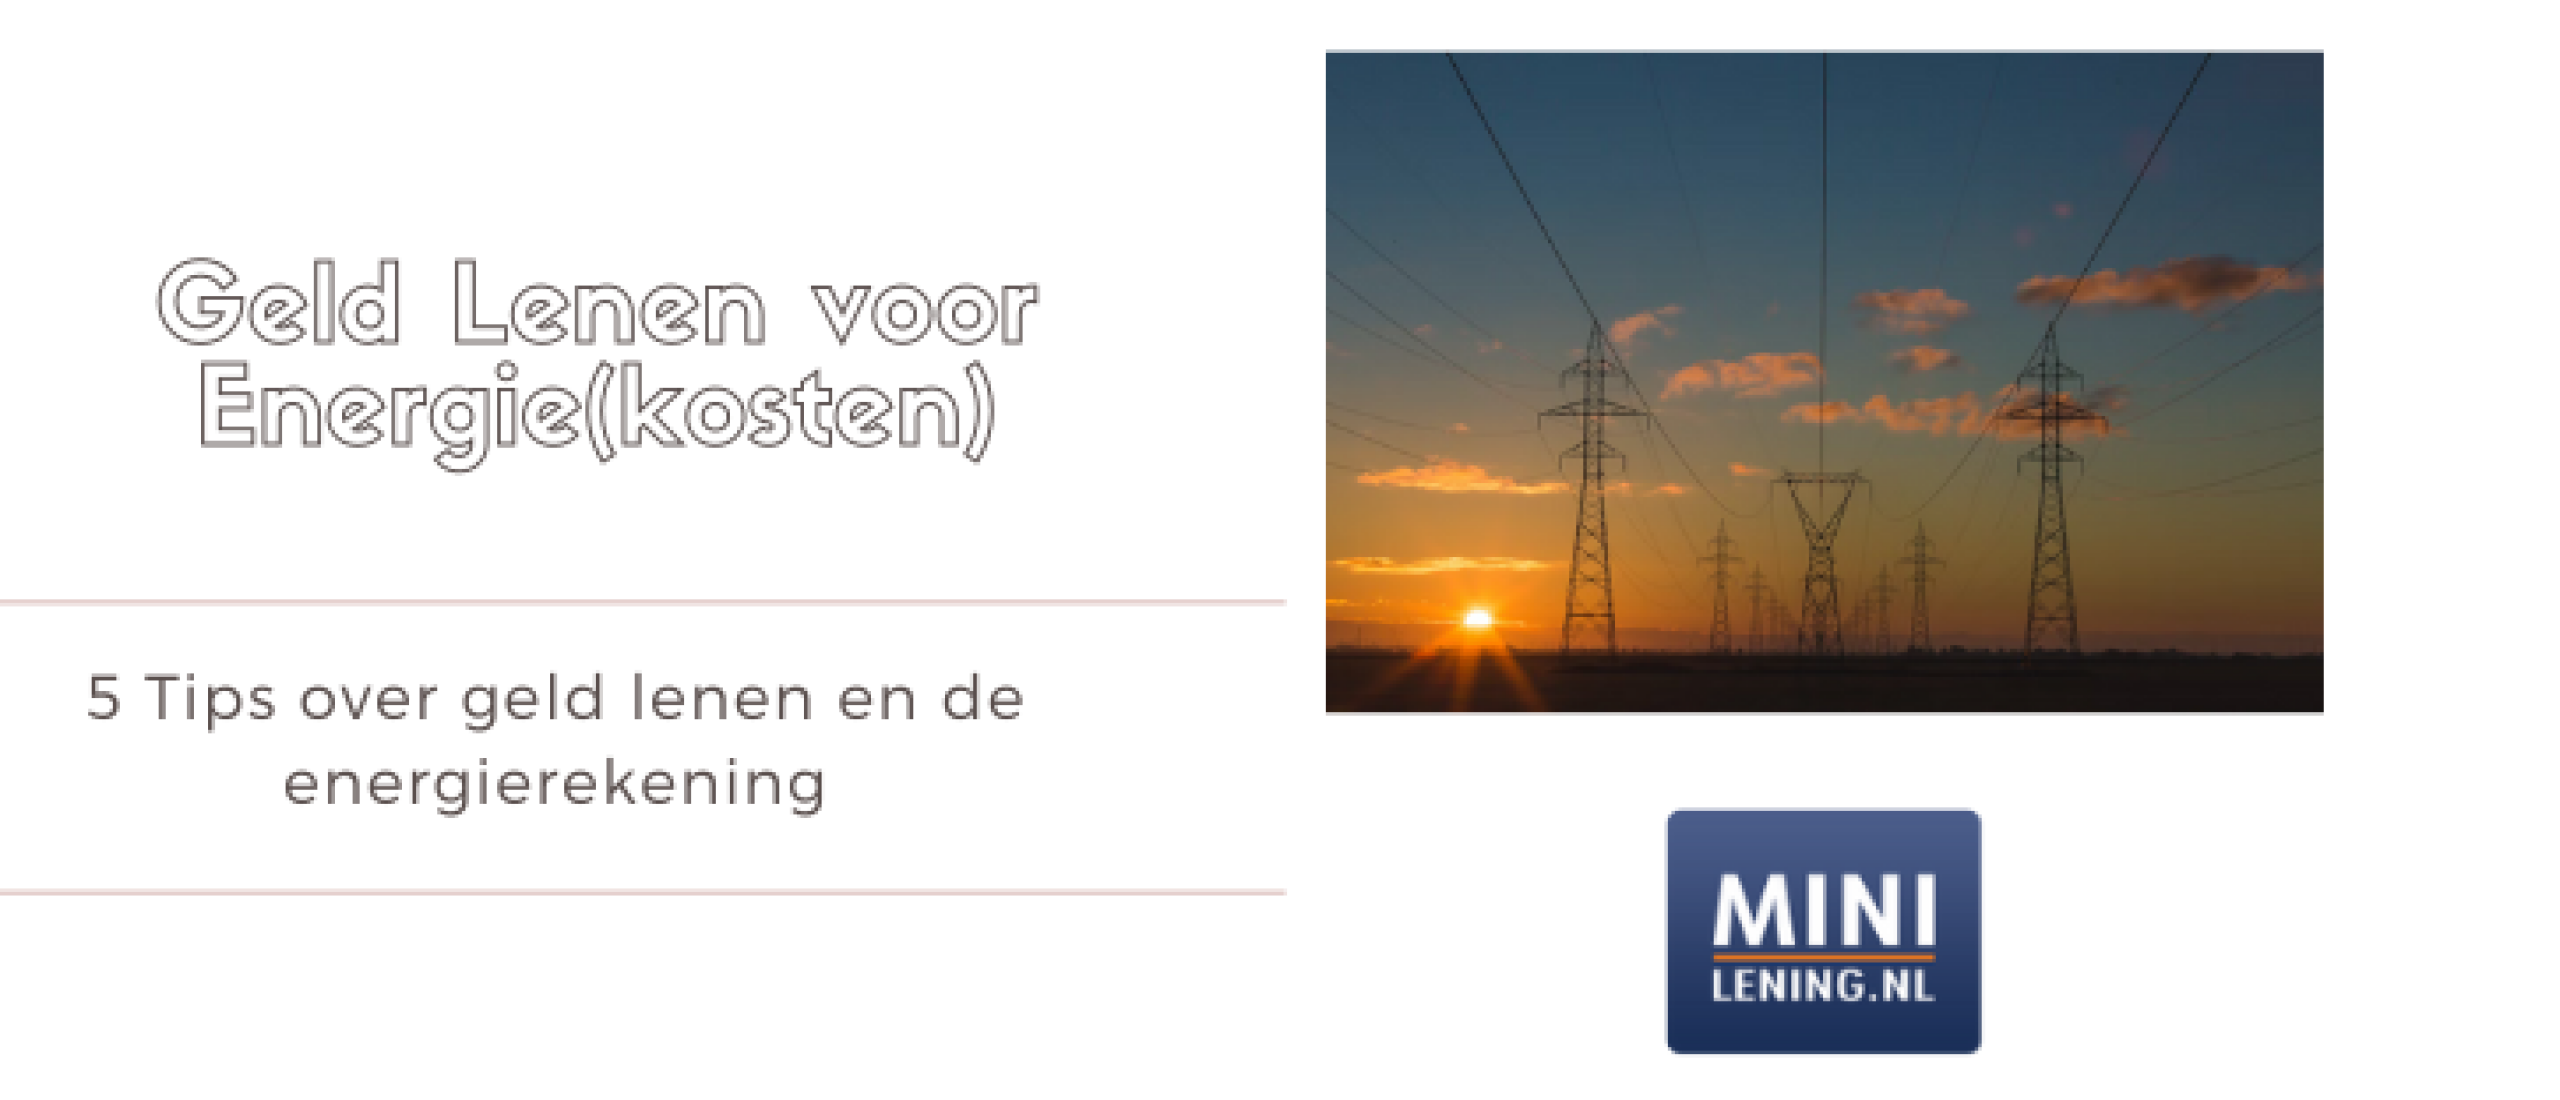 Geld lenen voor Energierekening? 5 Tips | Minilening.nl